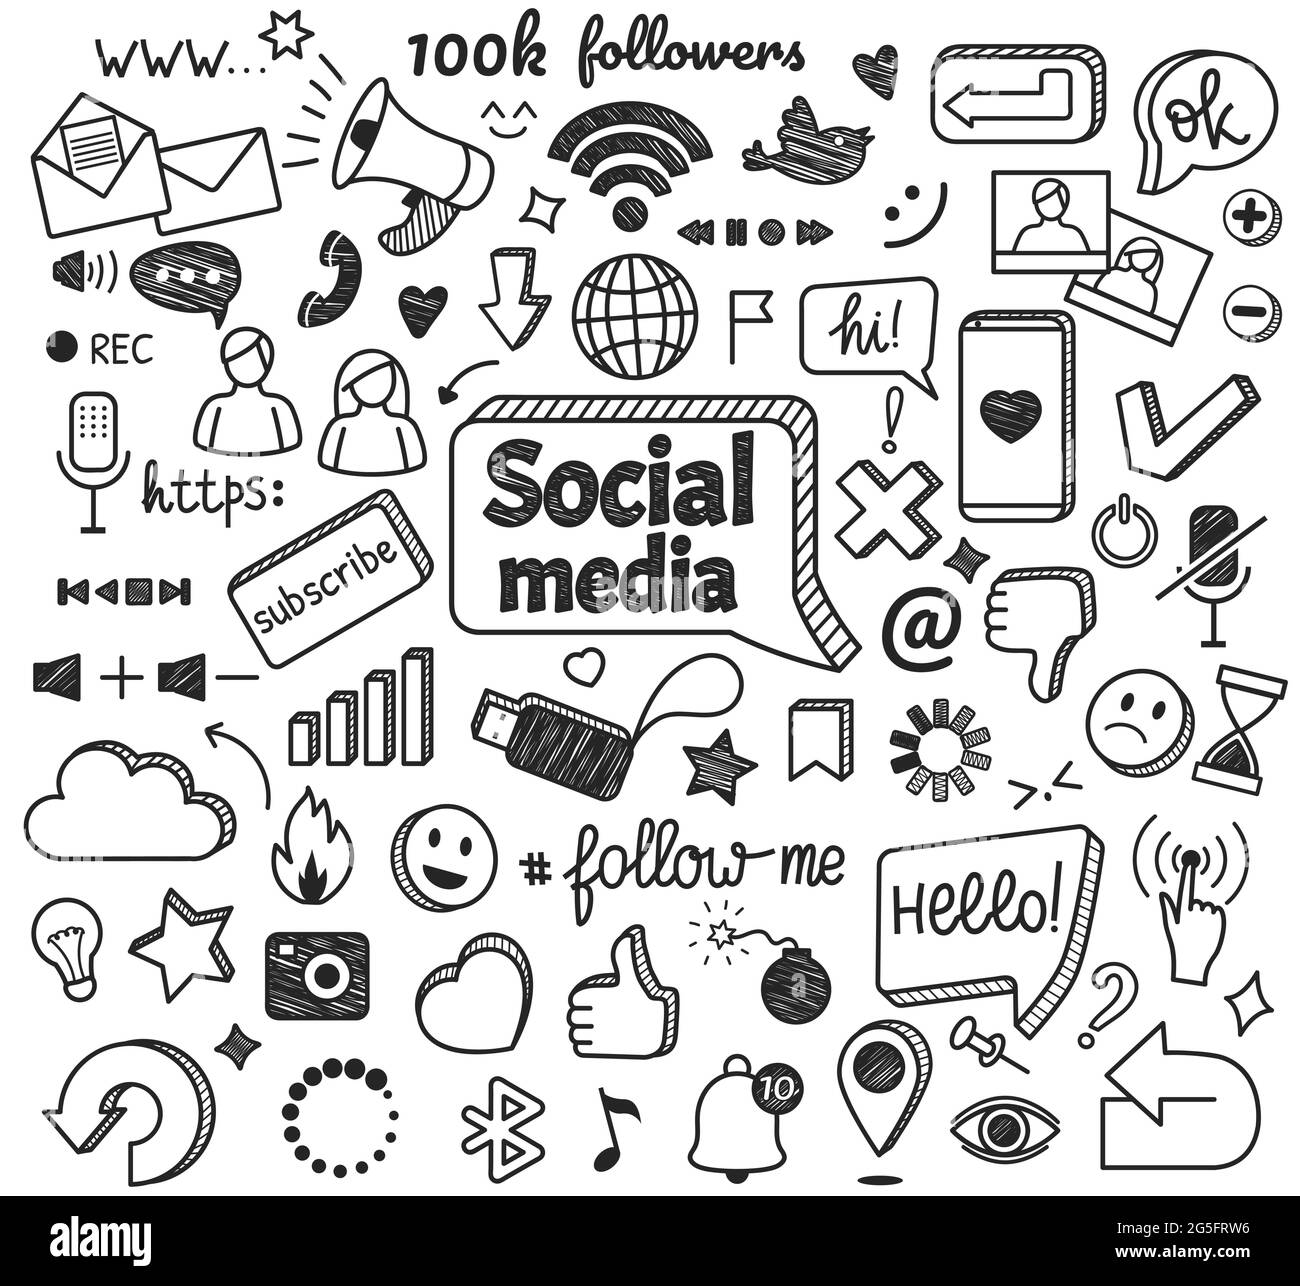 Social-Media-Kritzeleien. Handgezeichnete Internet- und Netzwerk-Sketch-Symbole. Digitales Marketing, Blogging, Online-Kommunikation Doodle Zeichen Vektor-Set. Nachrichten- oder Chat-Symbole mit sta, Cloud, Smile Stock Vektor